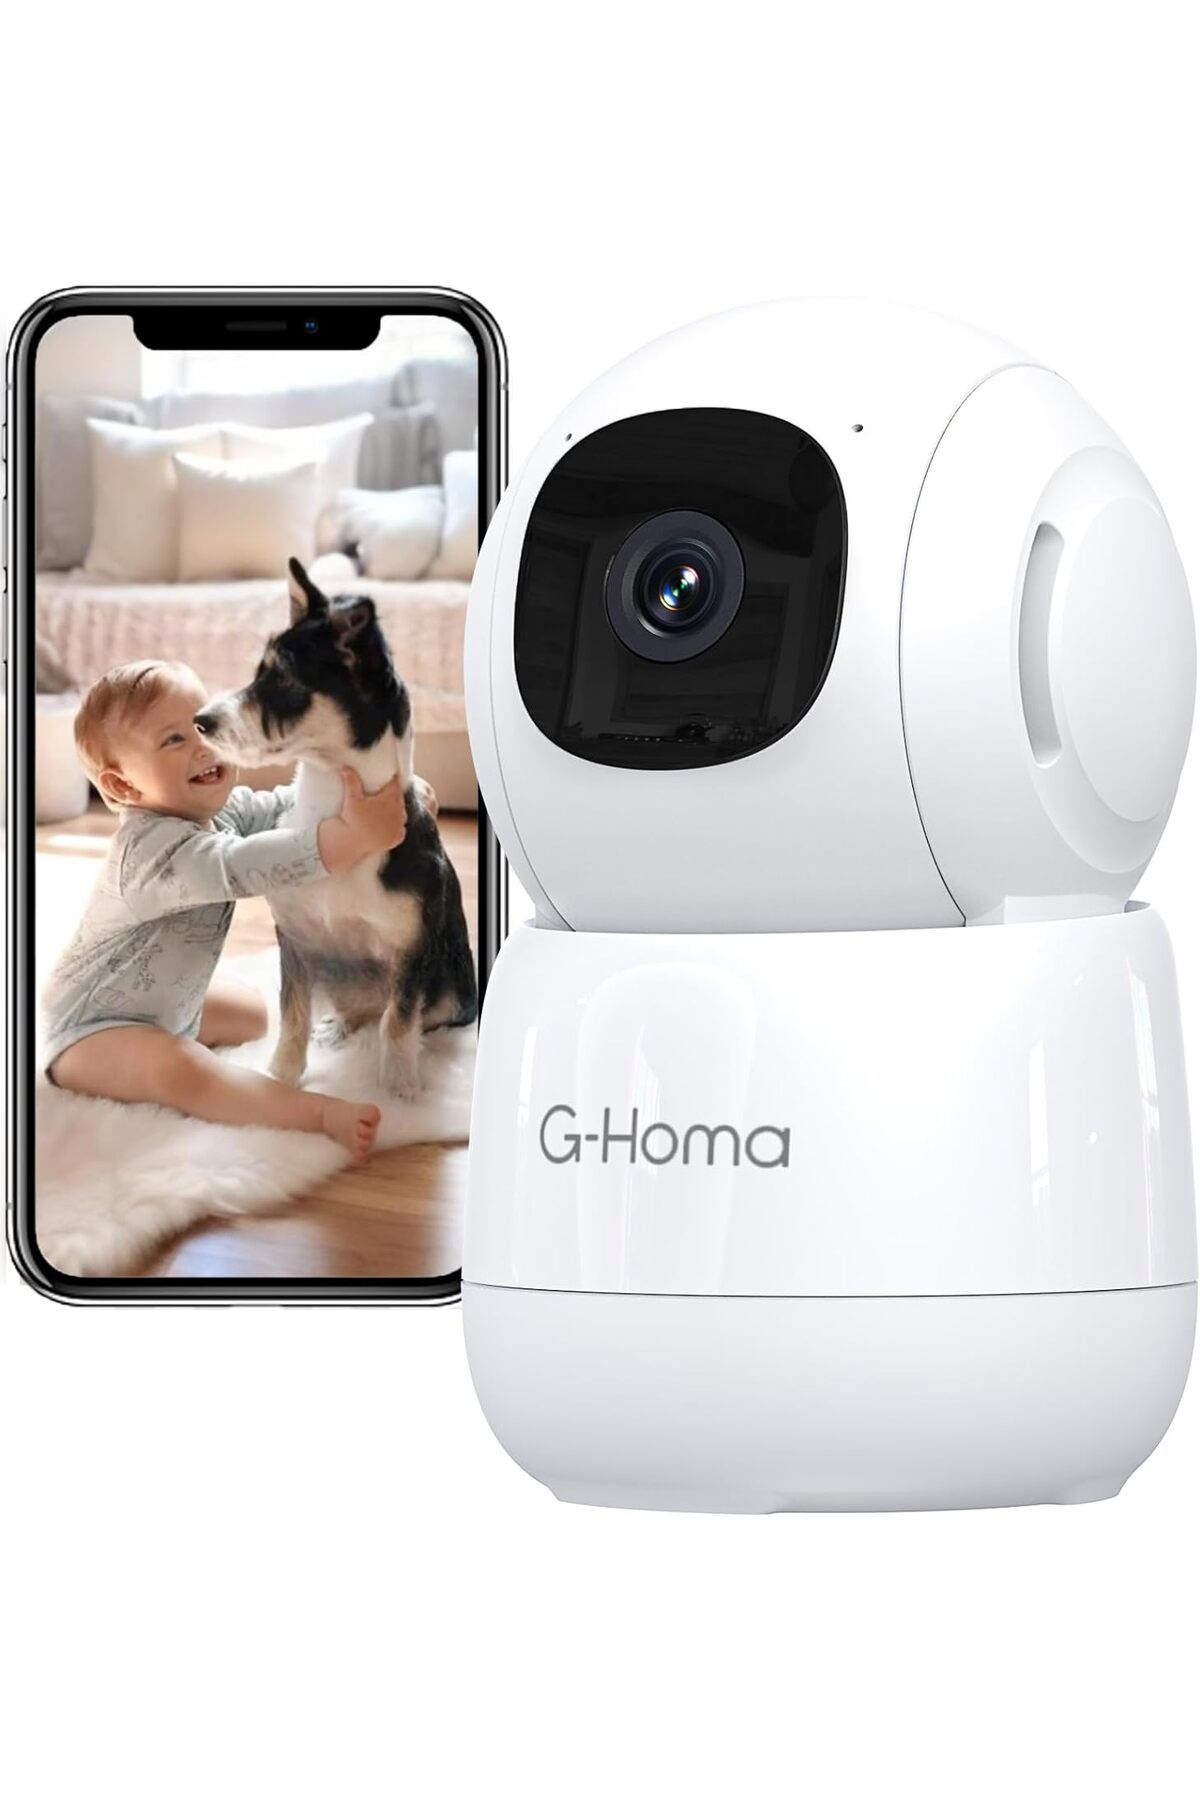 G-Homa İç Mekan Gözetleme Kamerası, Hareket Algılamalı 360 Derece WiFi İç Mekan Gözetleme Kamerası